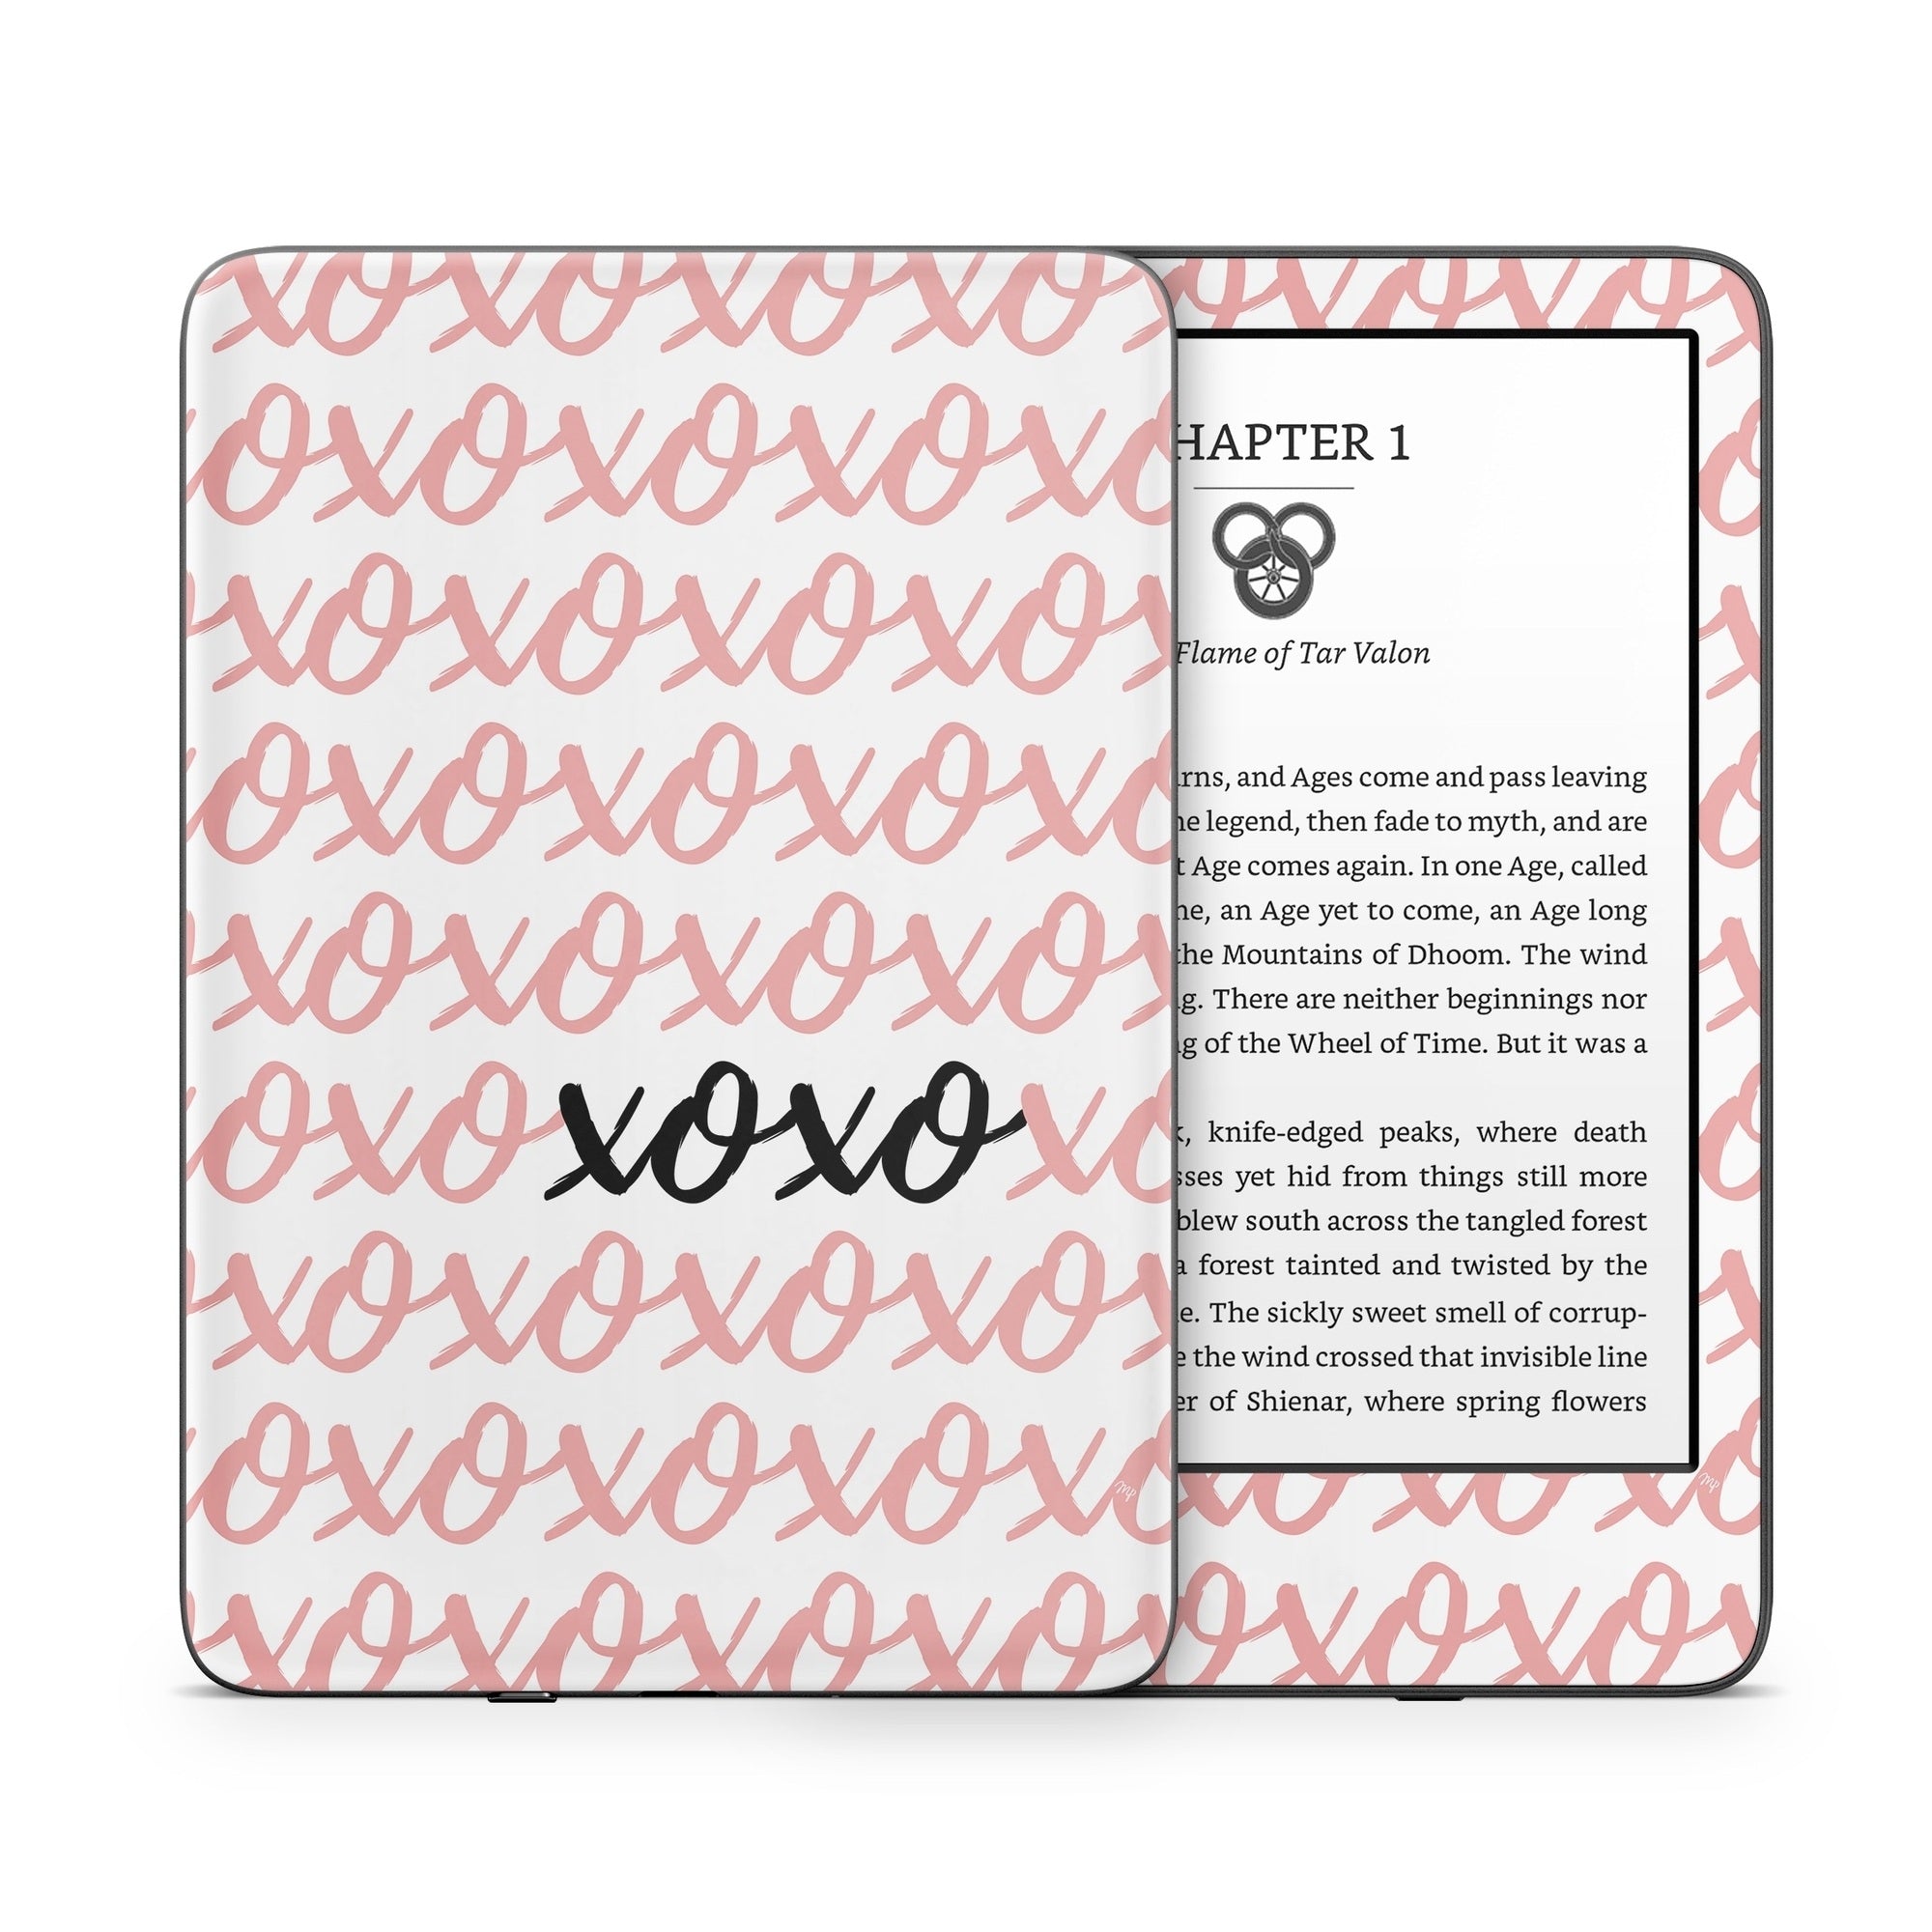 xoxo - Amazon Kindle Skin